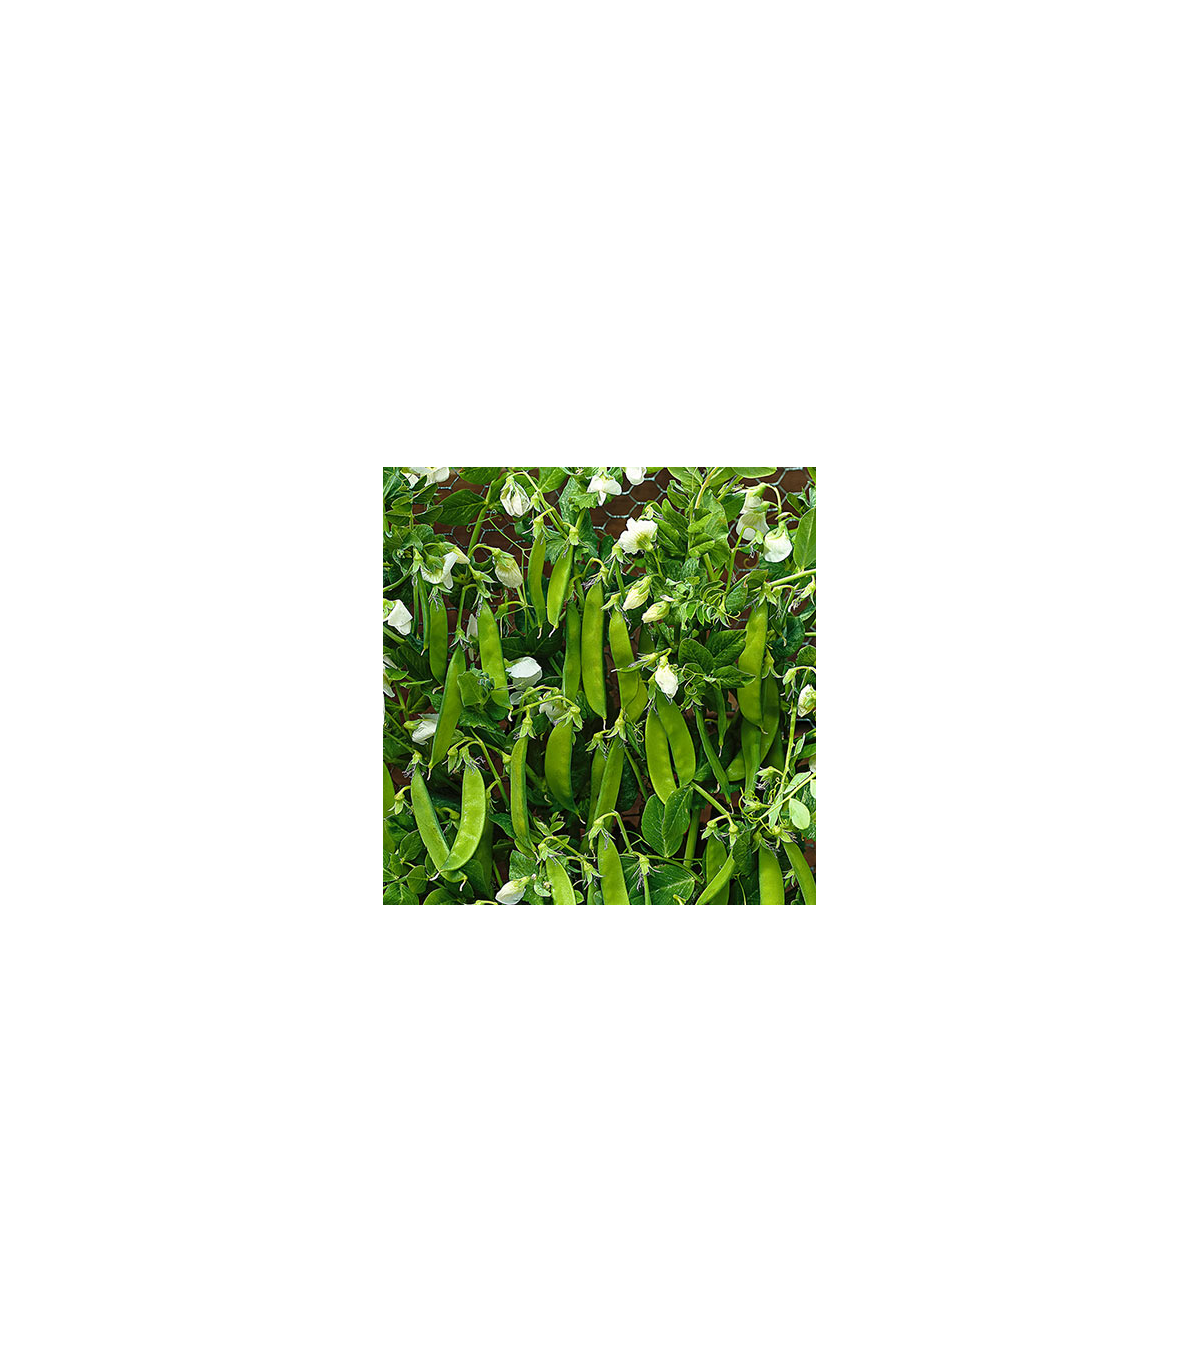 BIO Hrach cukrový Norli - Pisum sativum - Bio semená - 15 g